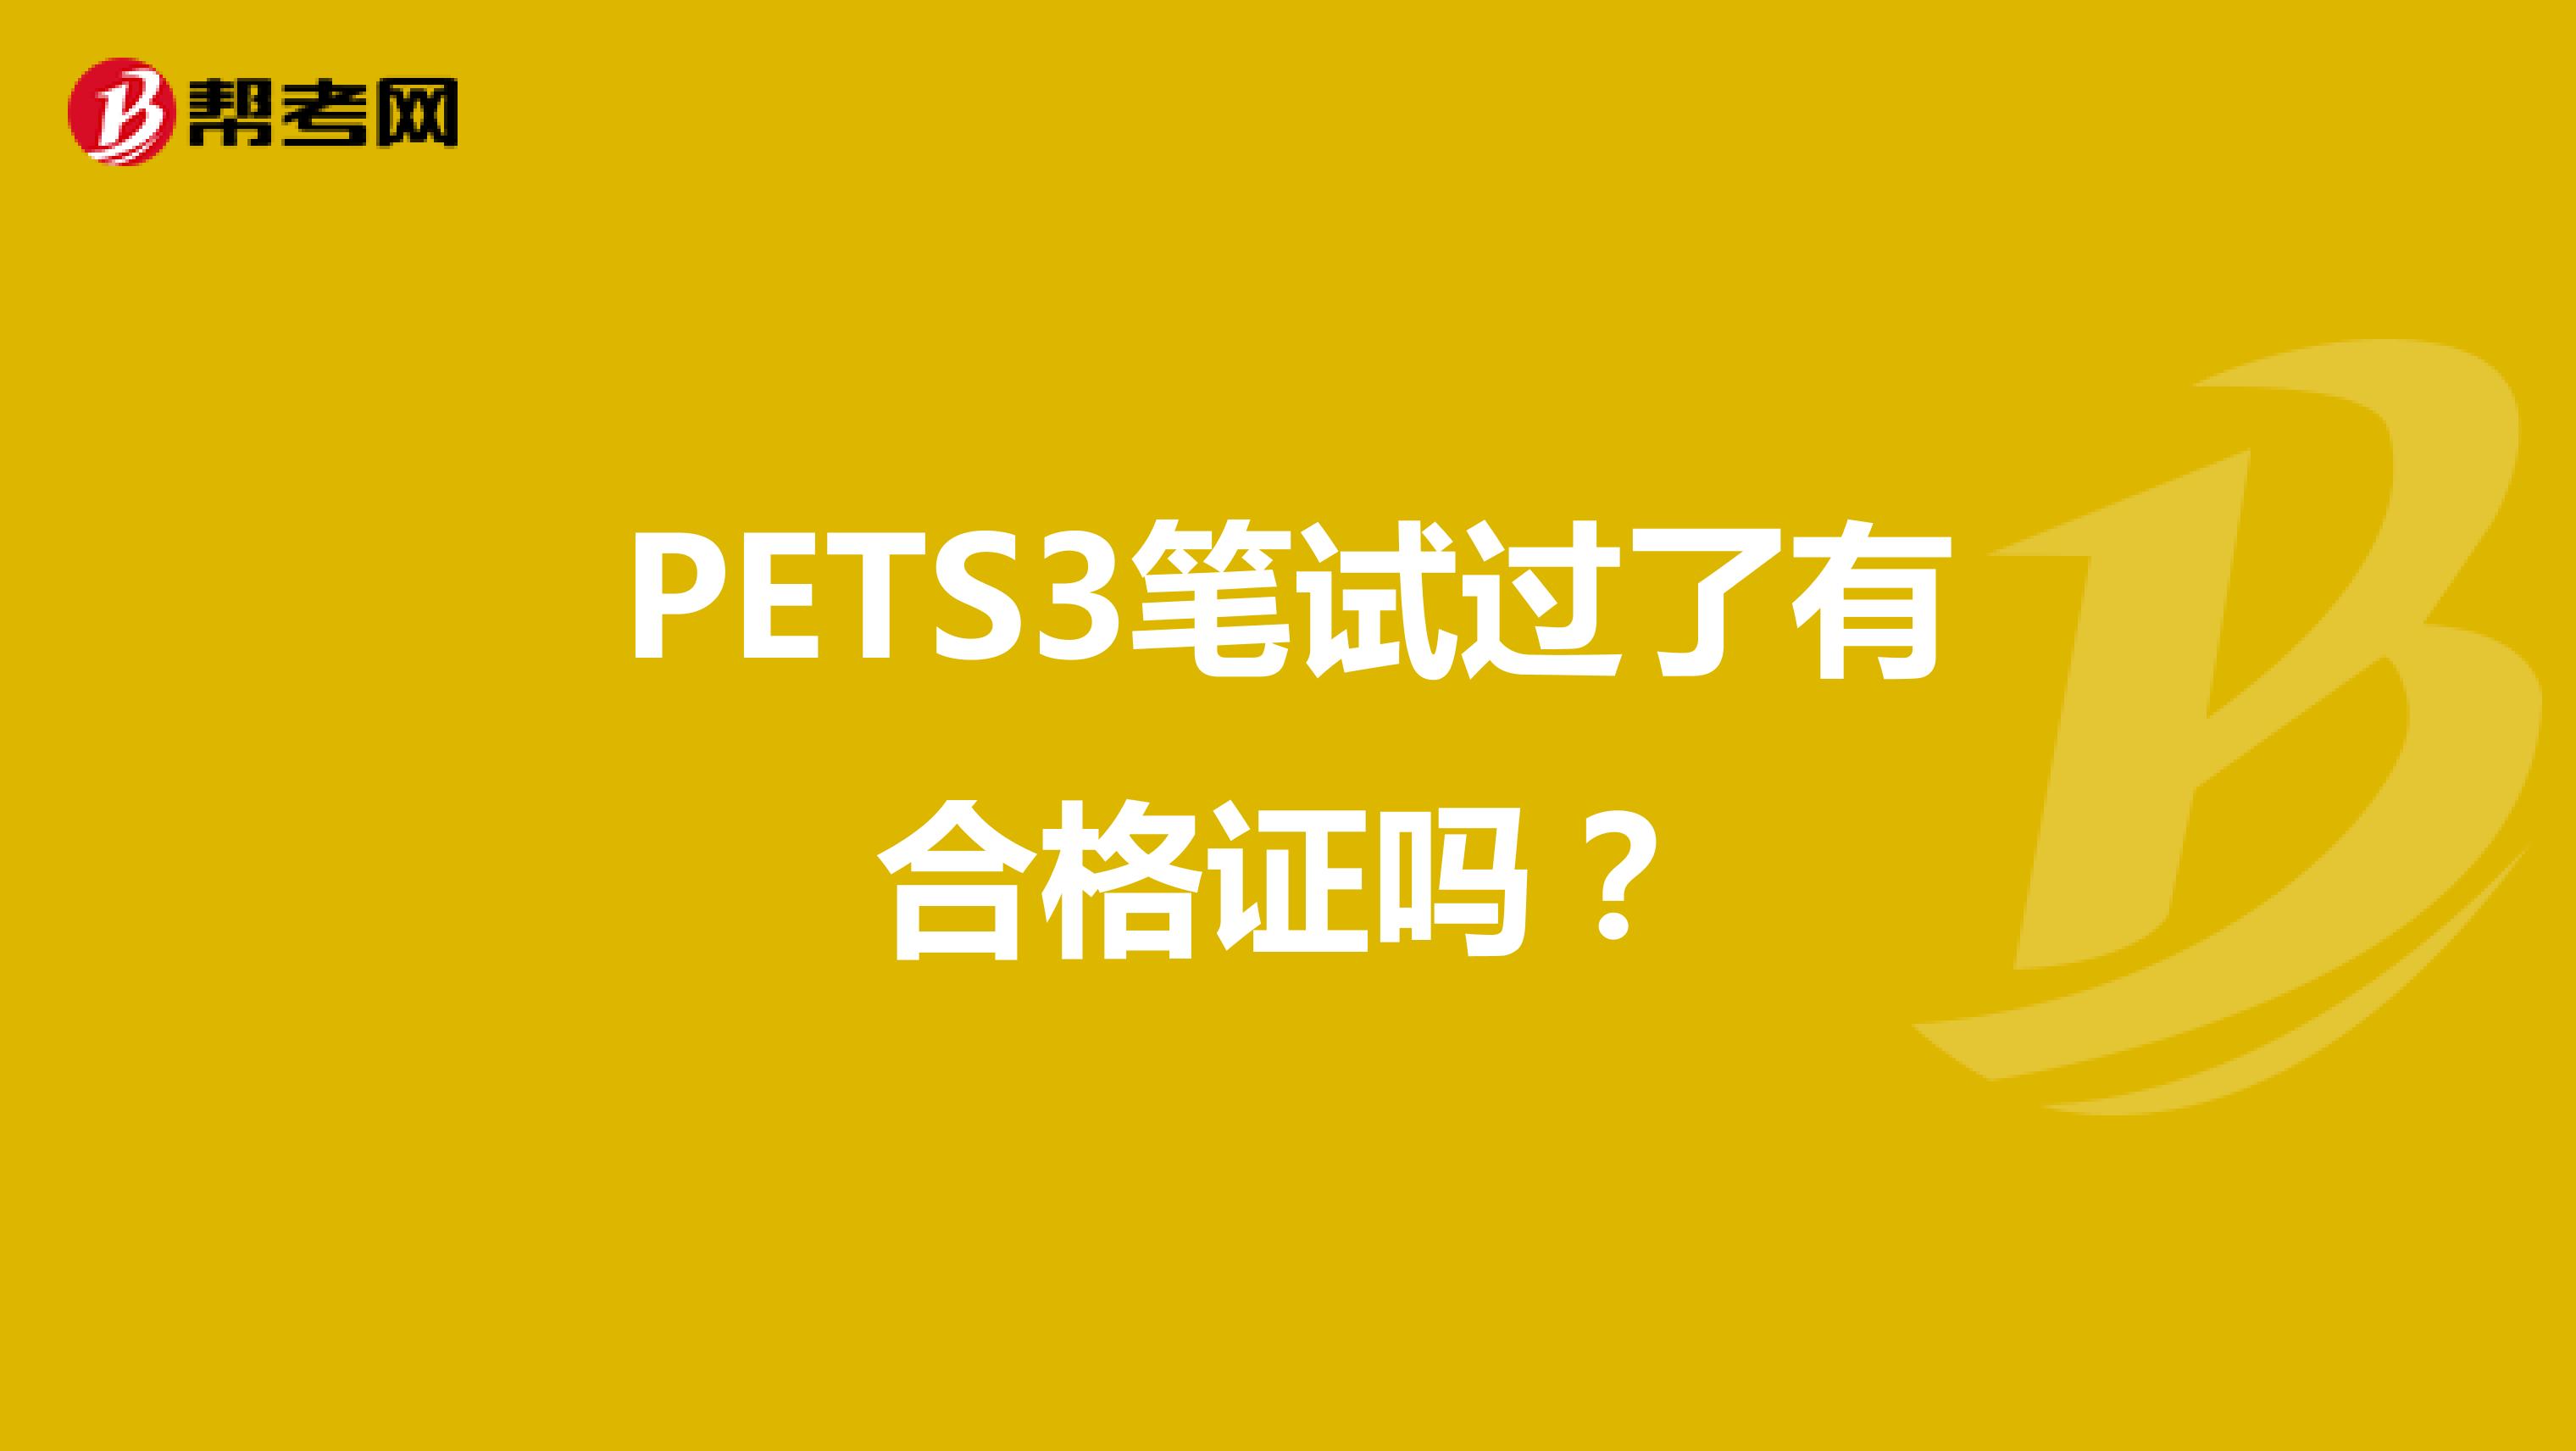 PETS3笔试过了有合格证吗？